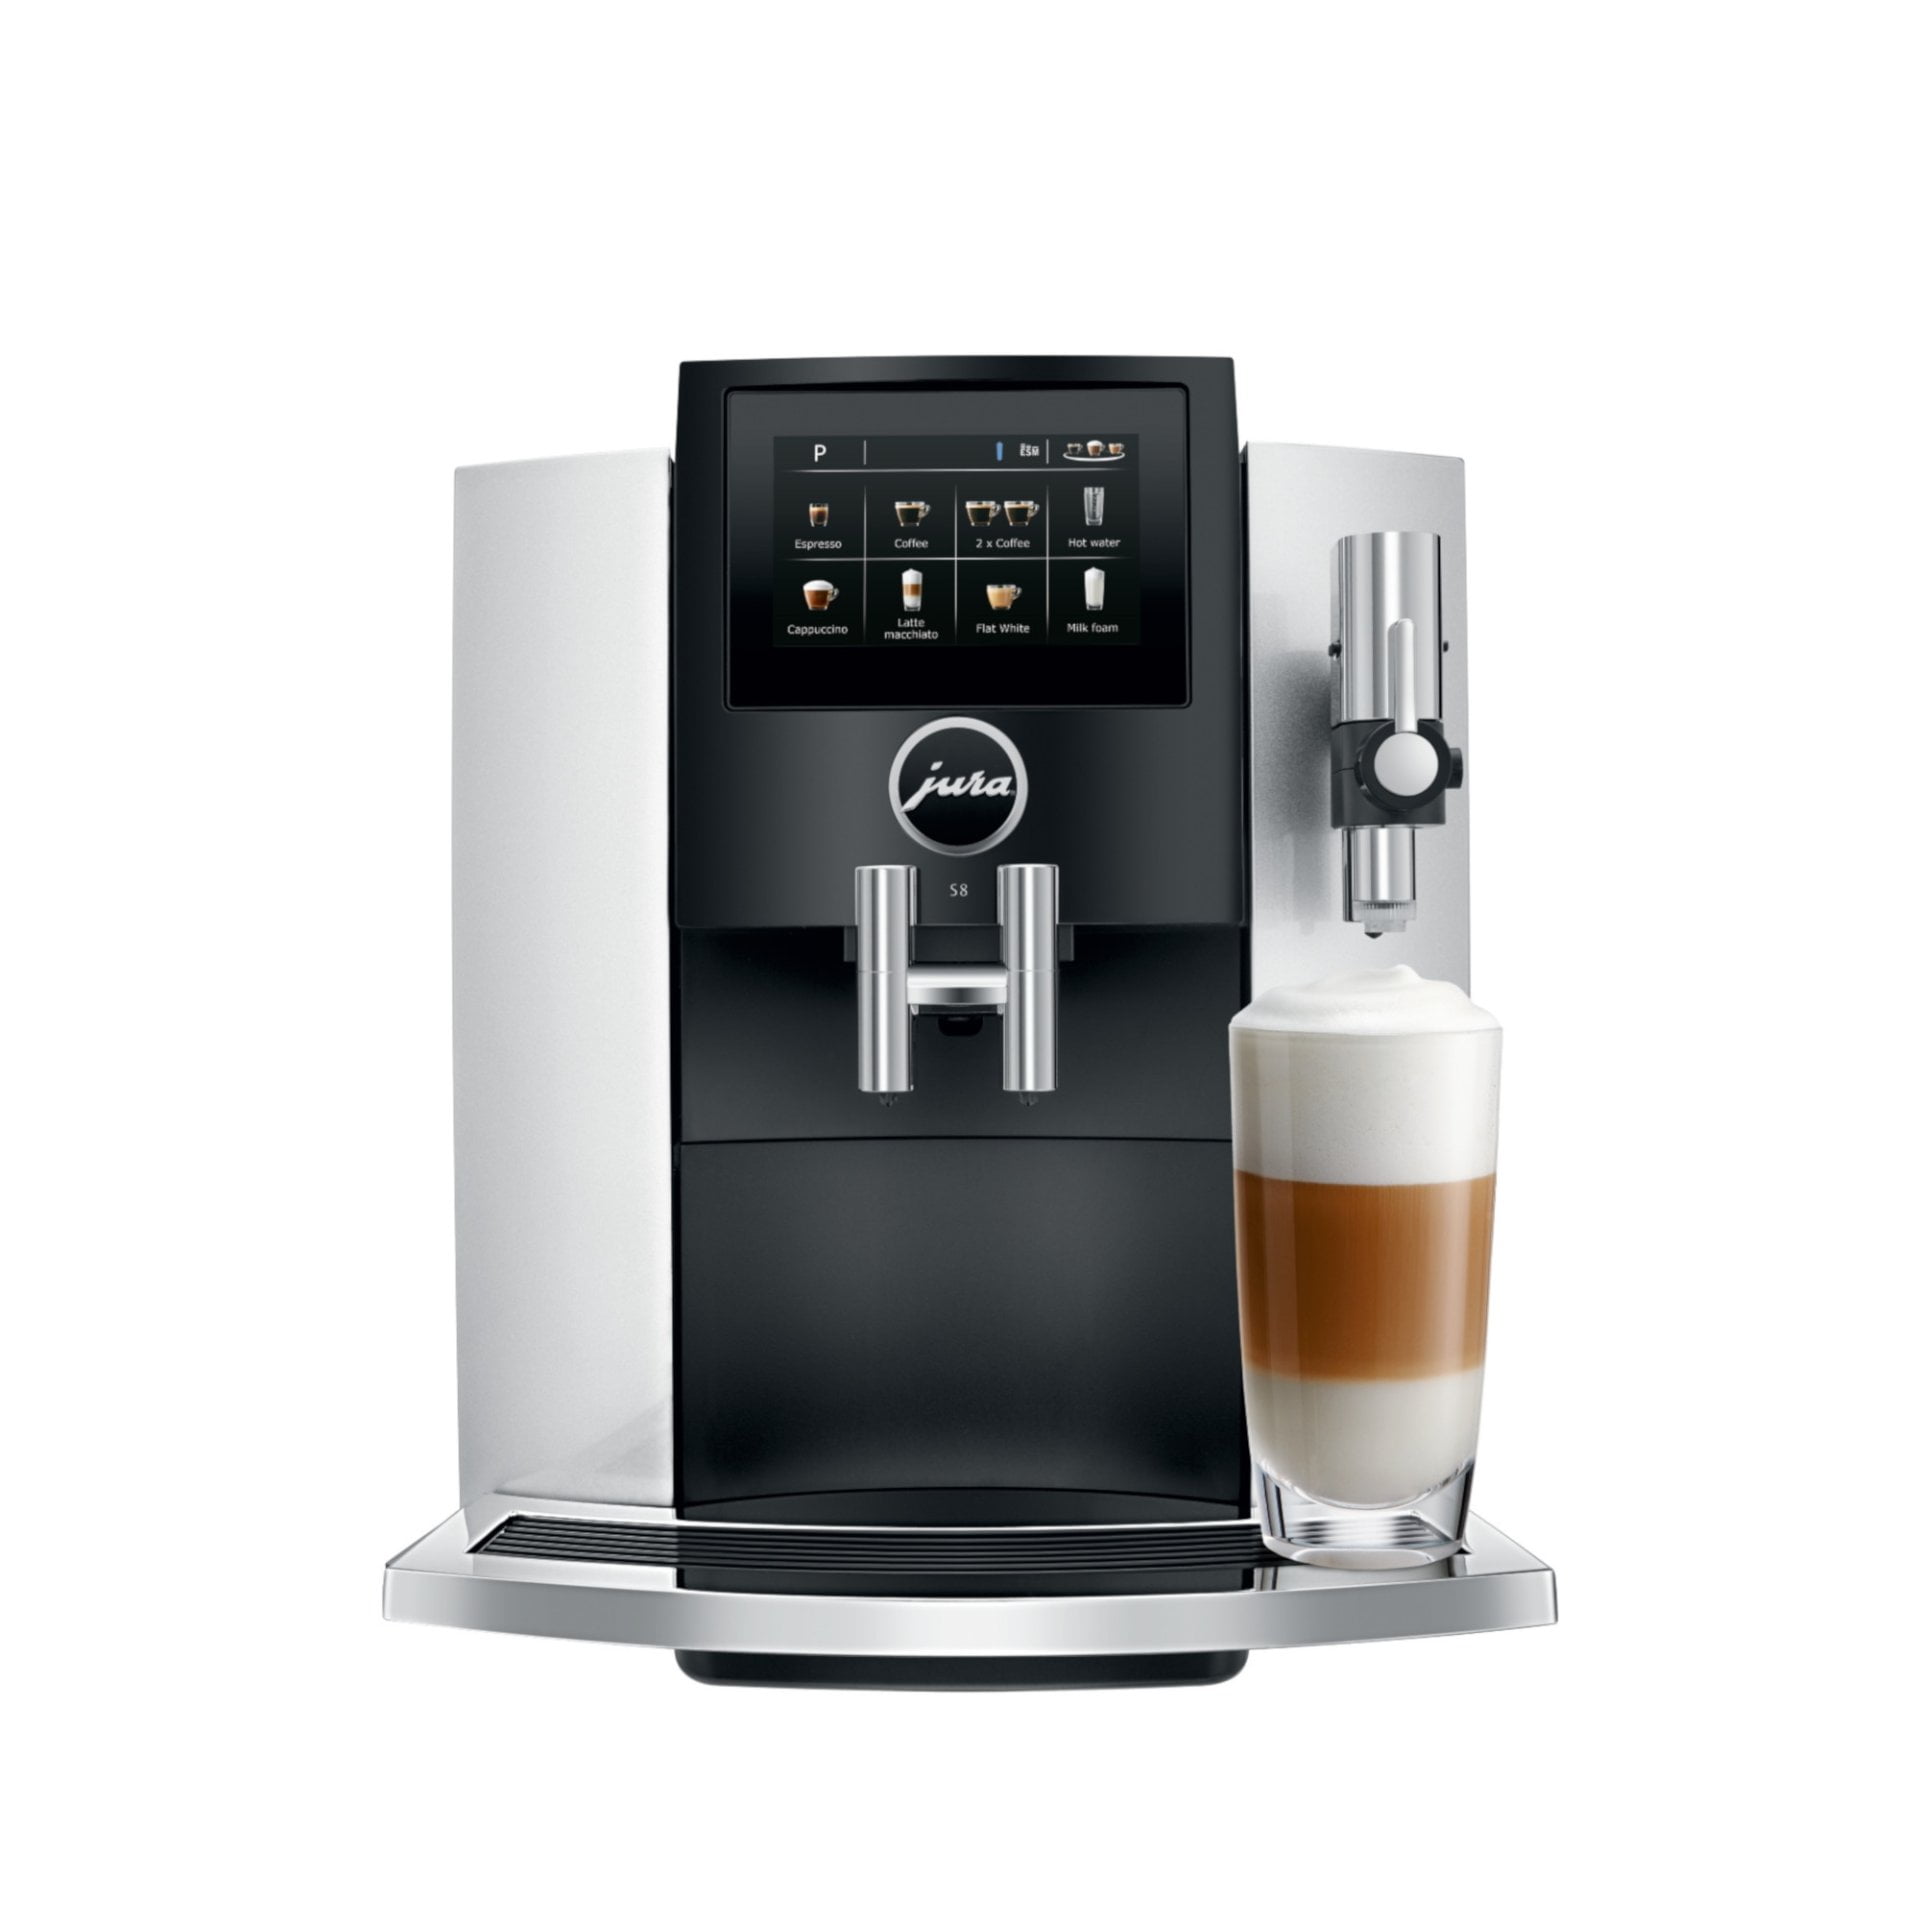 toewijzen Voor een dagje uit uitstulping Jura S8 Automatic Coffee & Espresso Machine | Moonlight Silver - Walmart.com